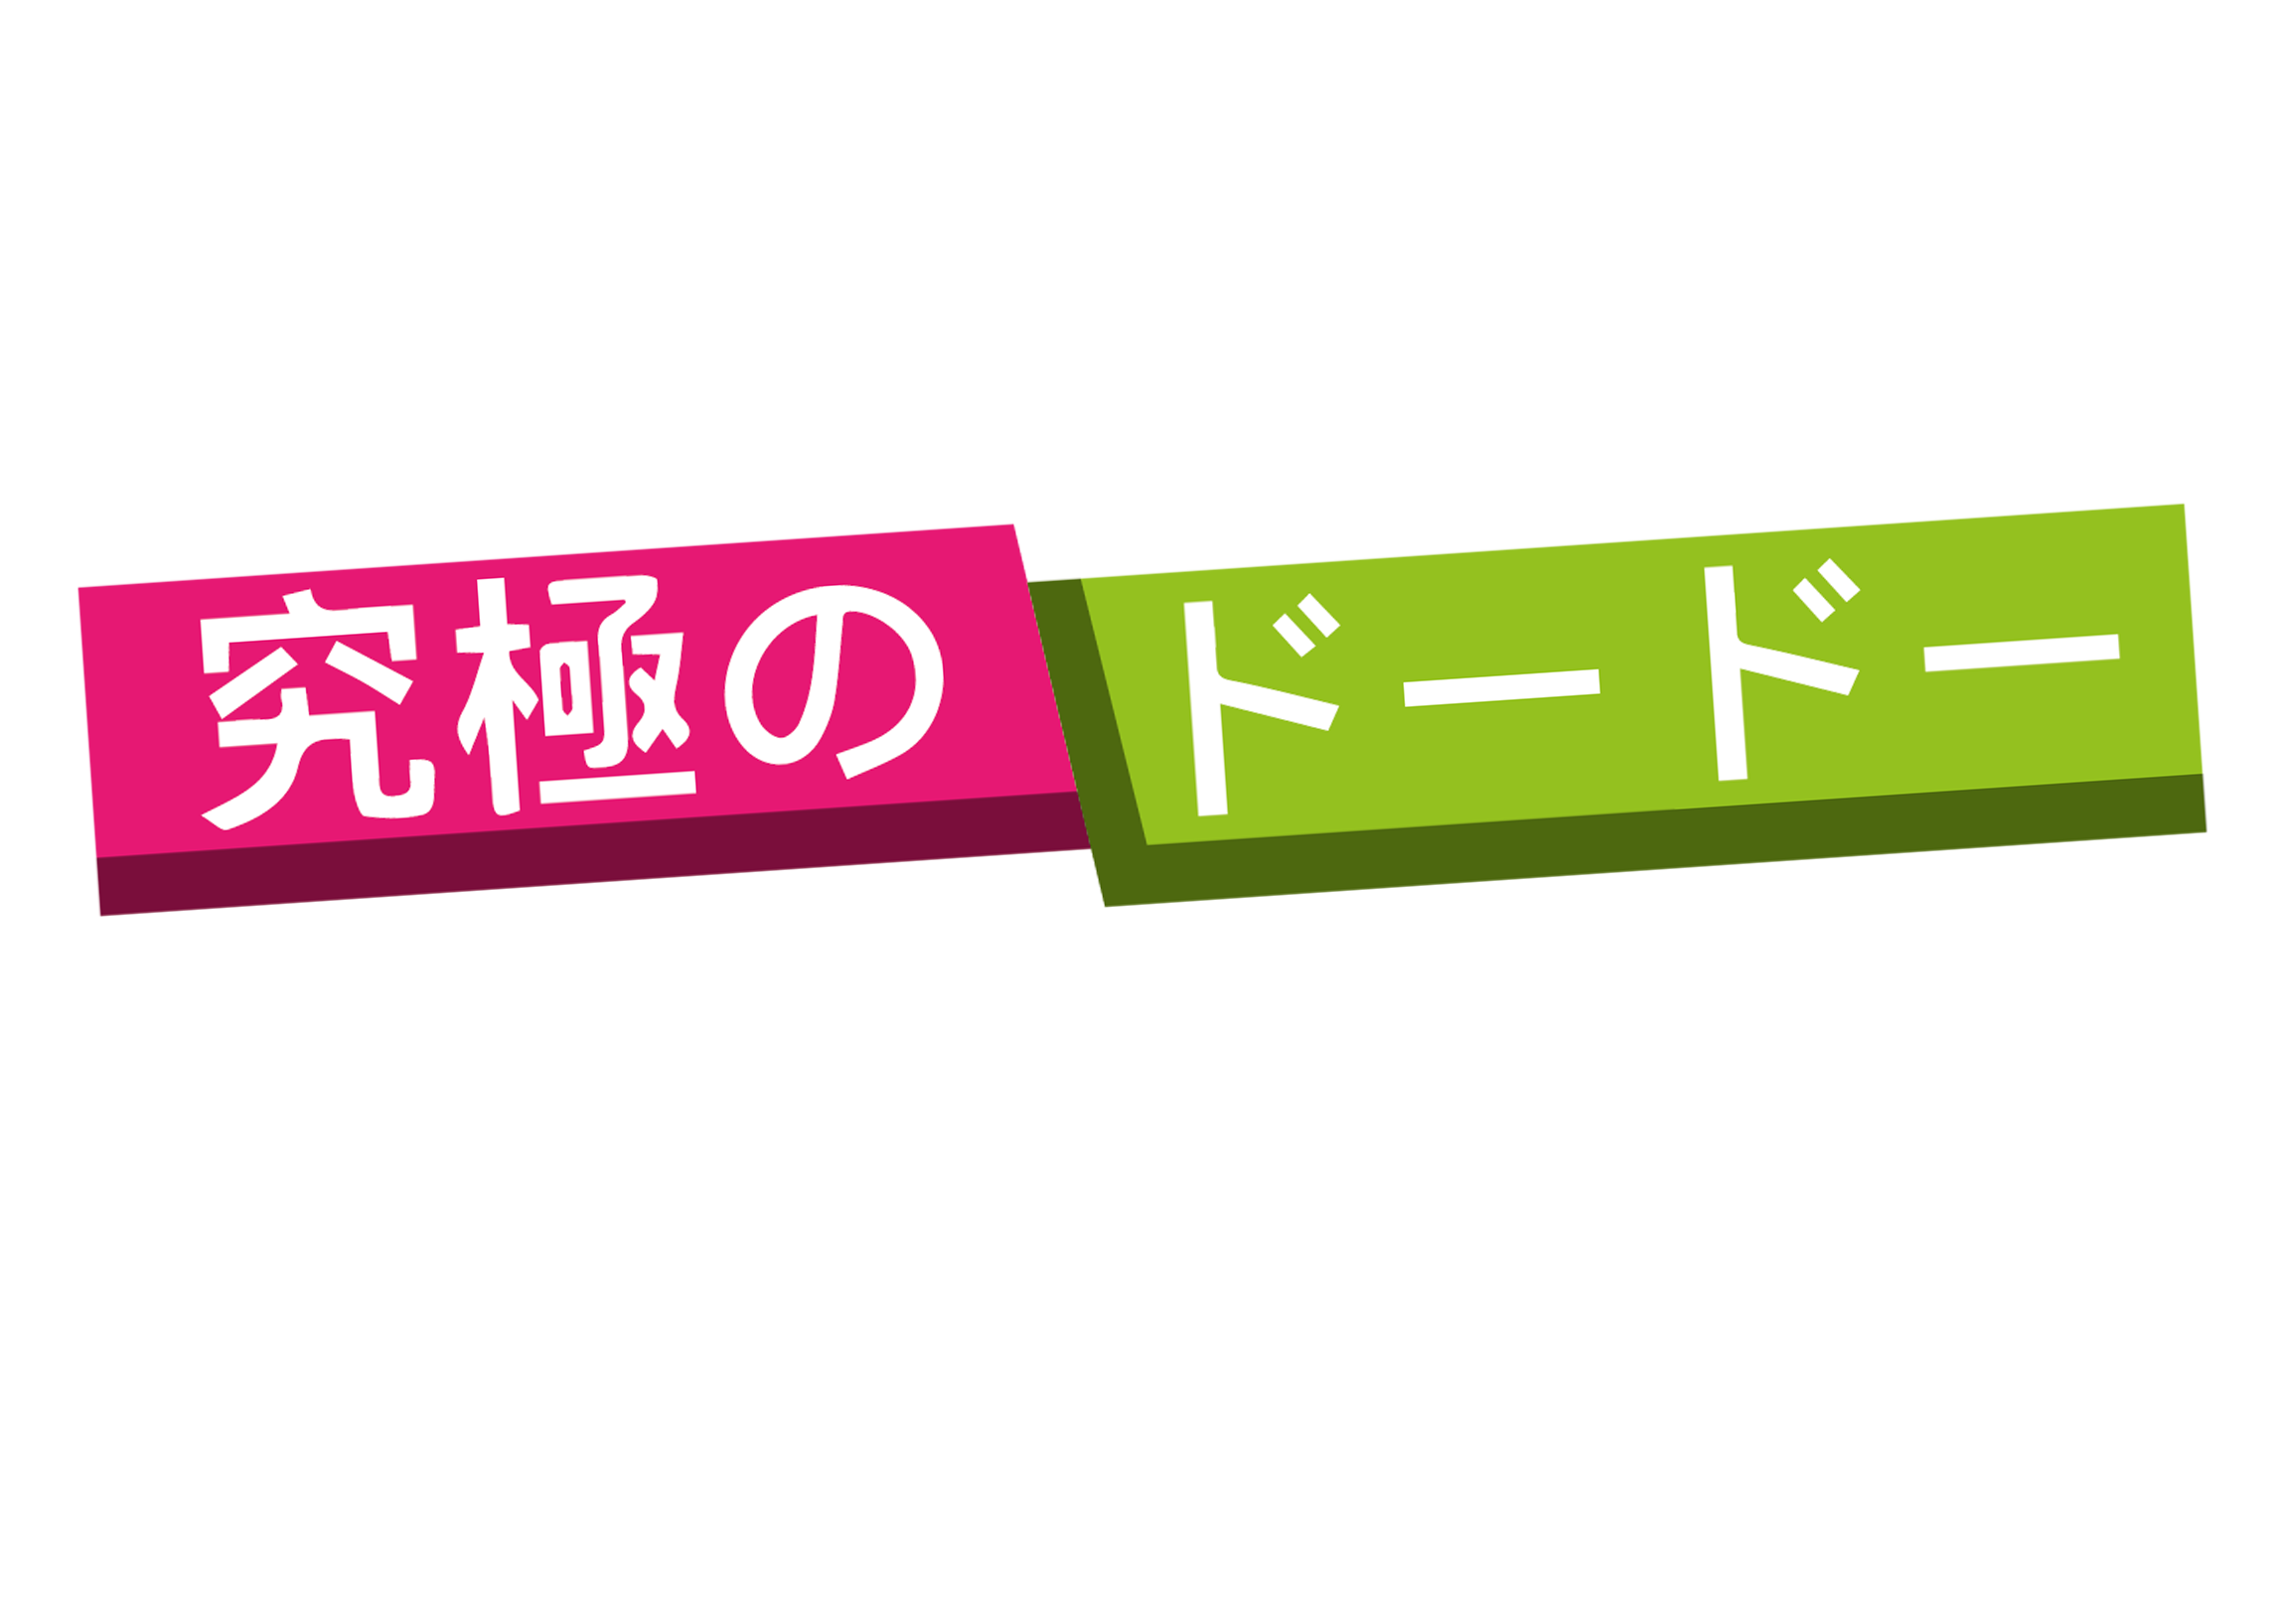 The Ultimate Dodo